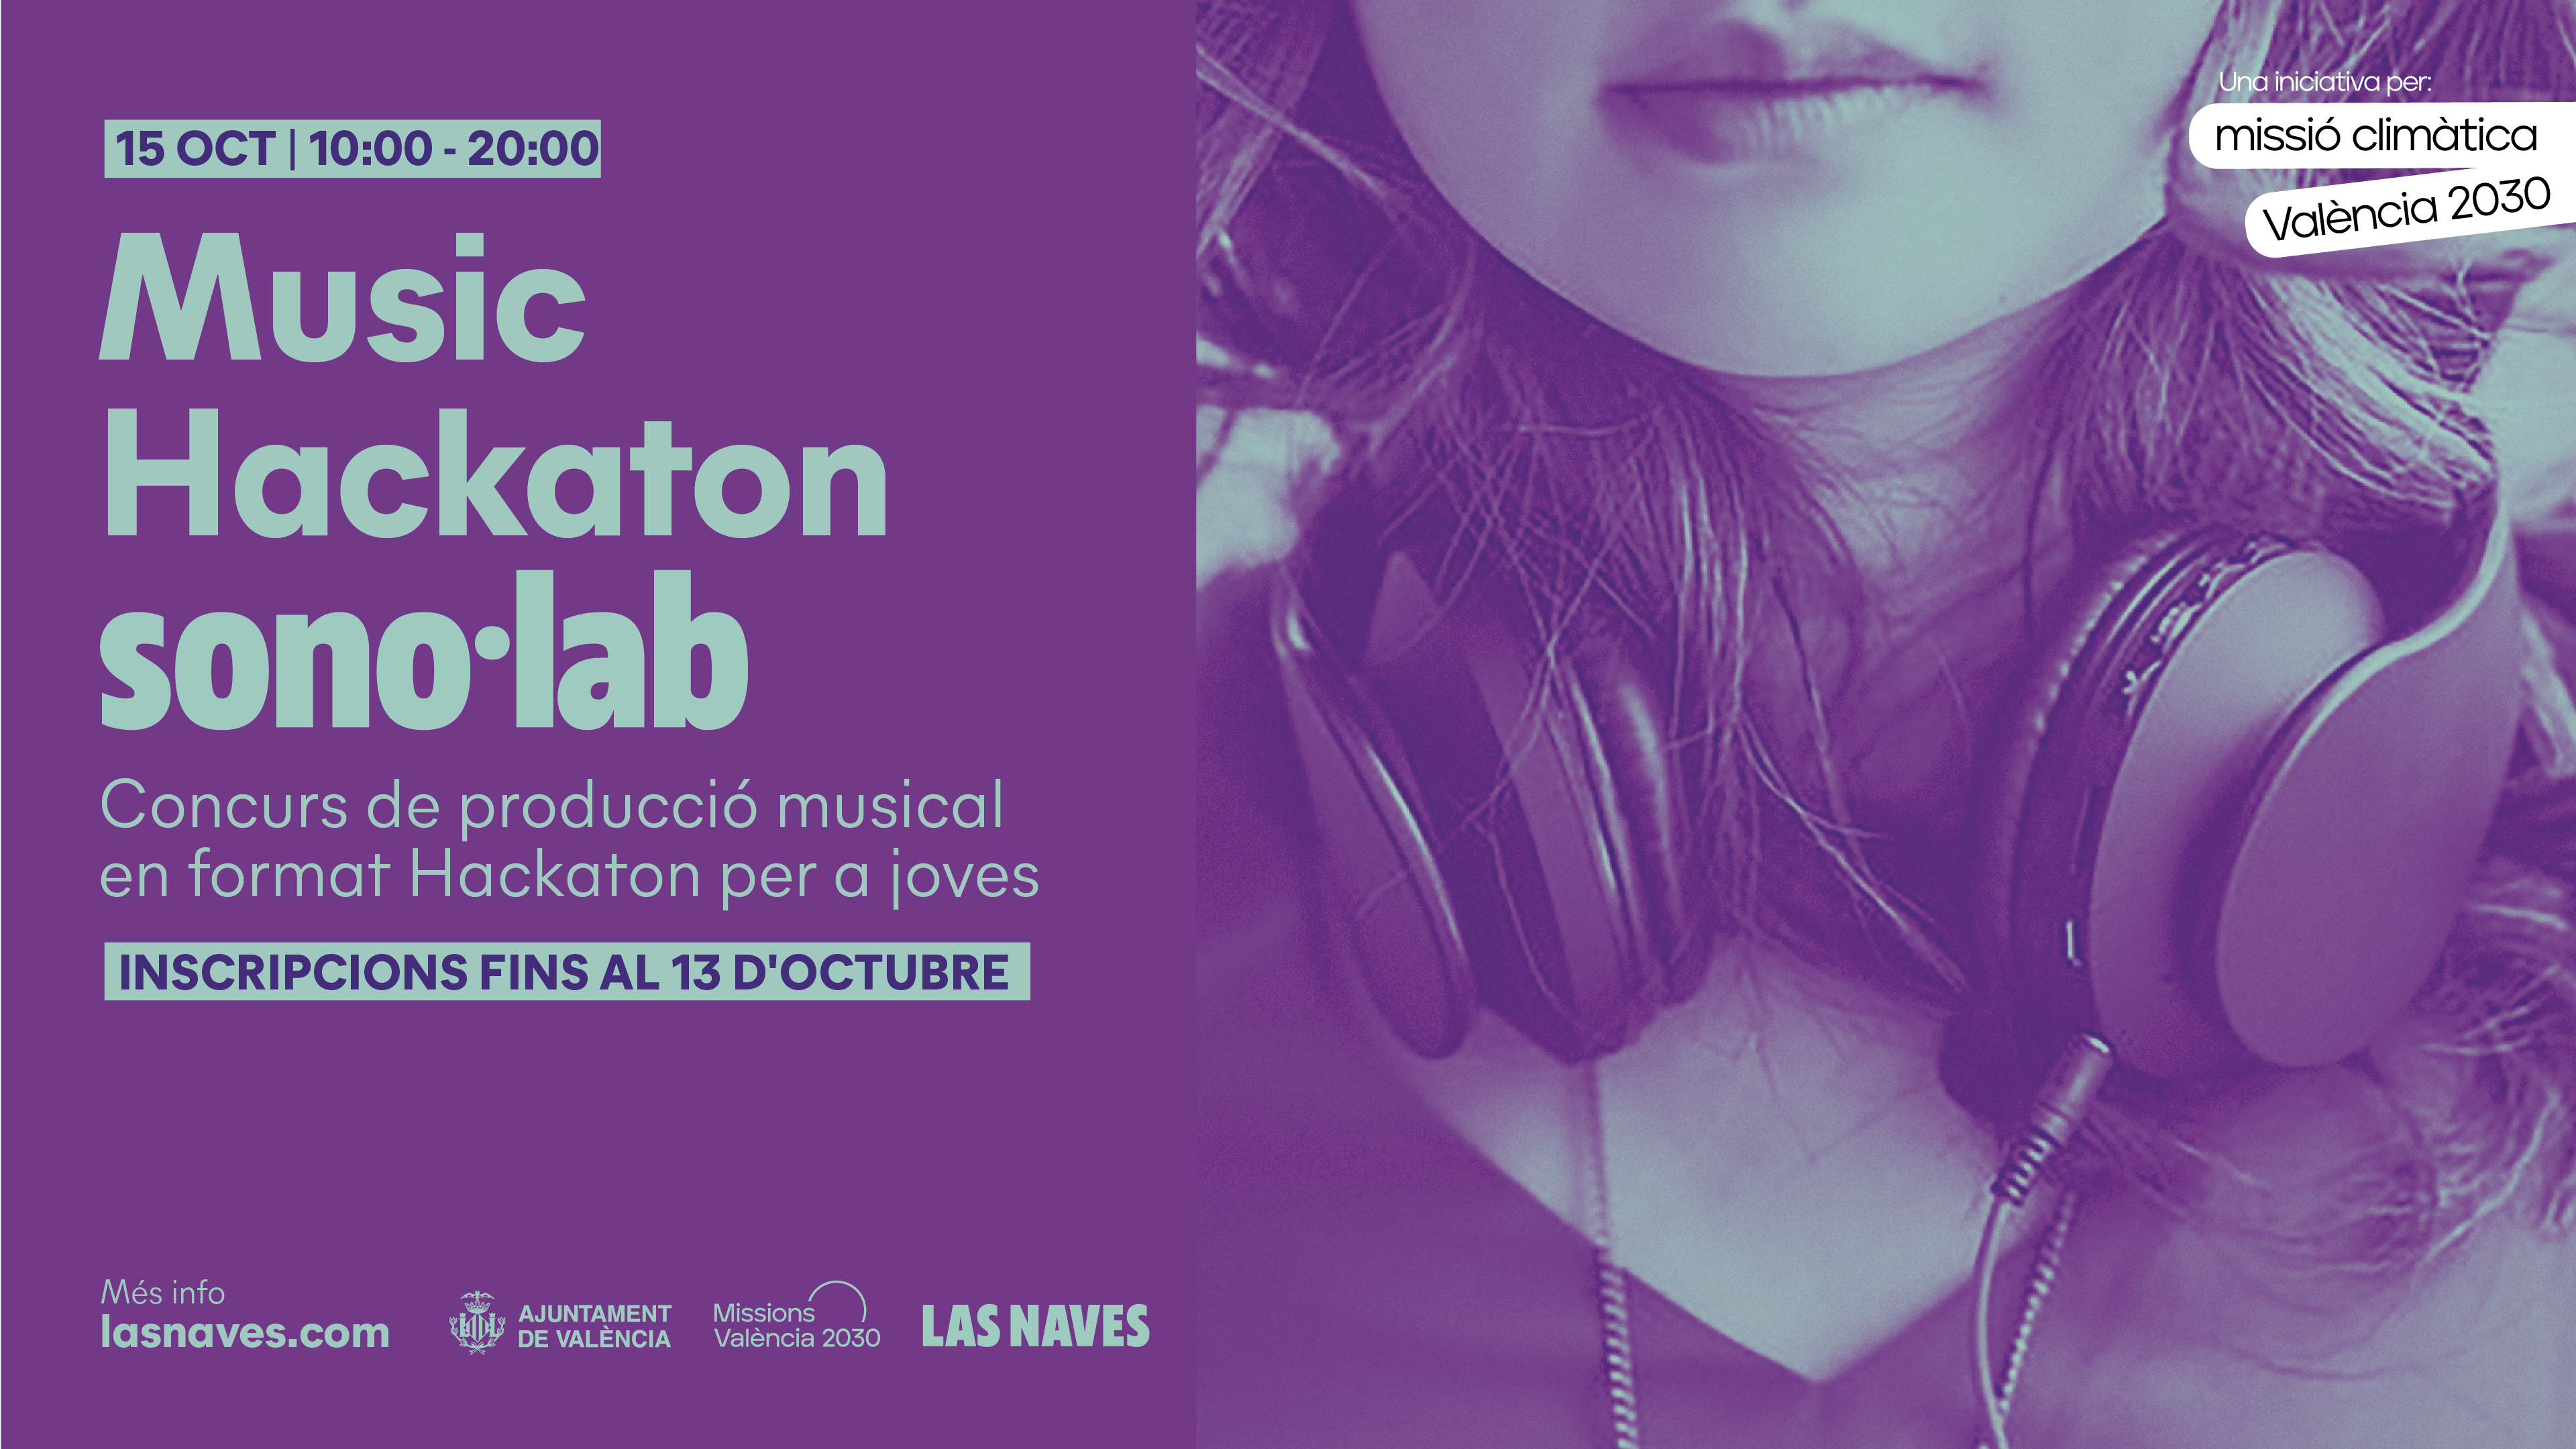 Cartel anunciador del concurso de producción musical Music Hackaton de sobol·lab